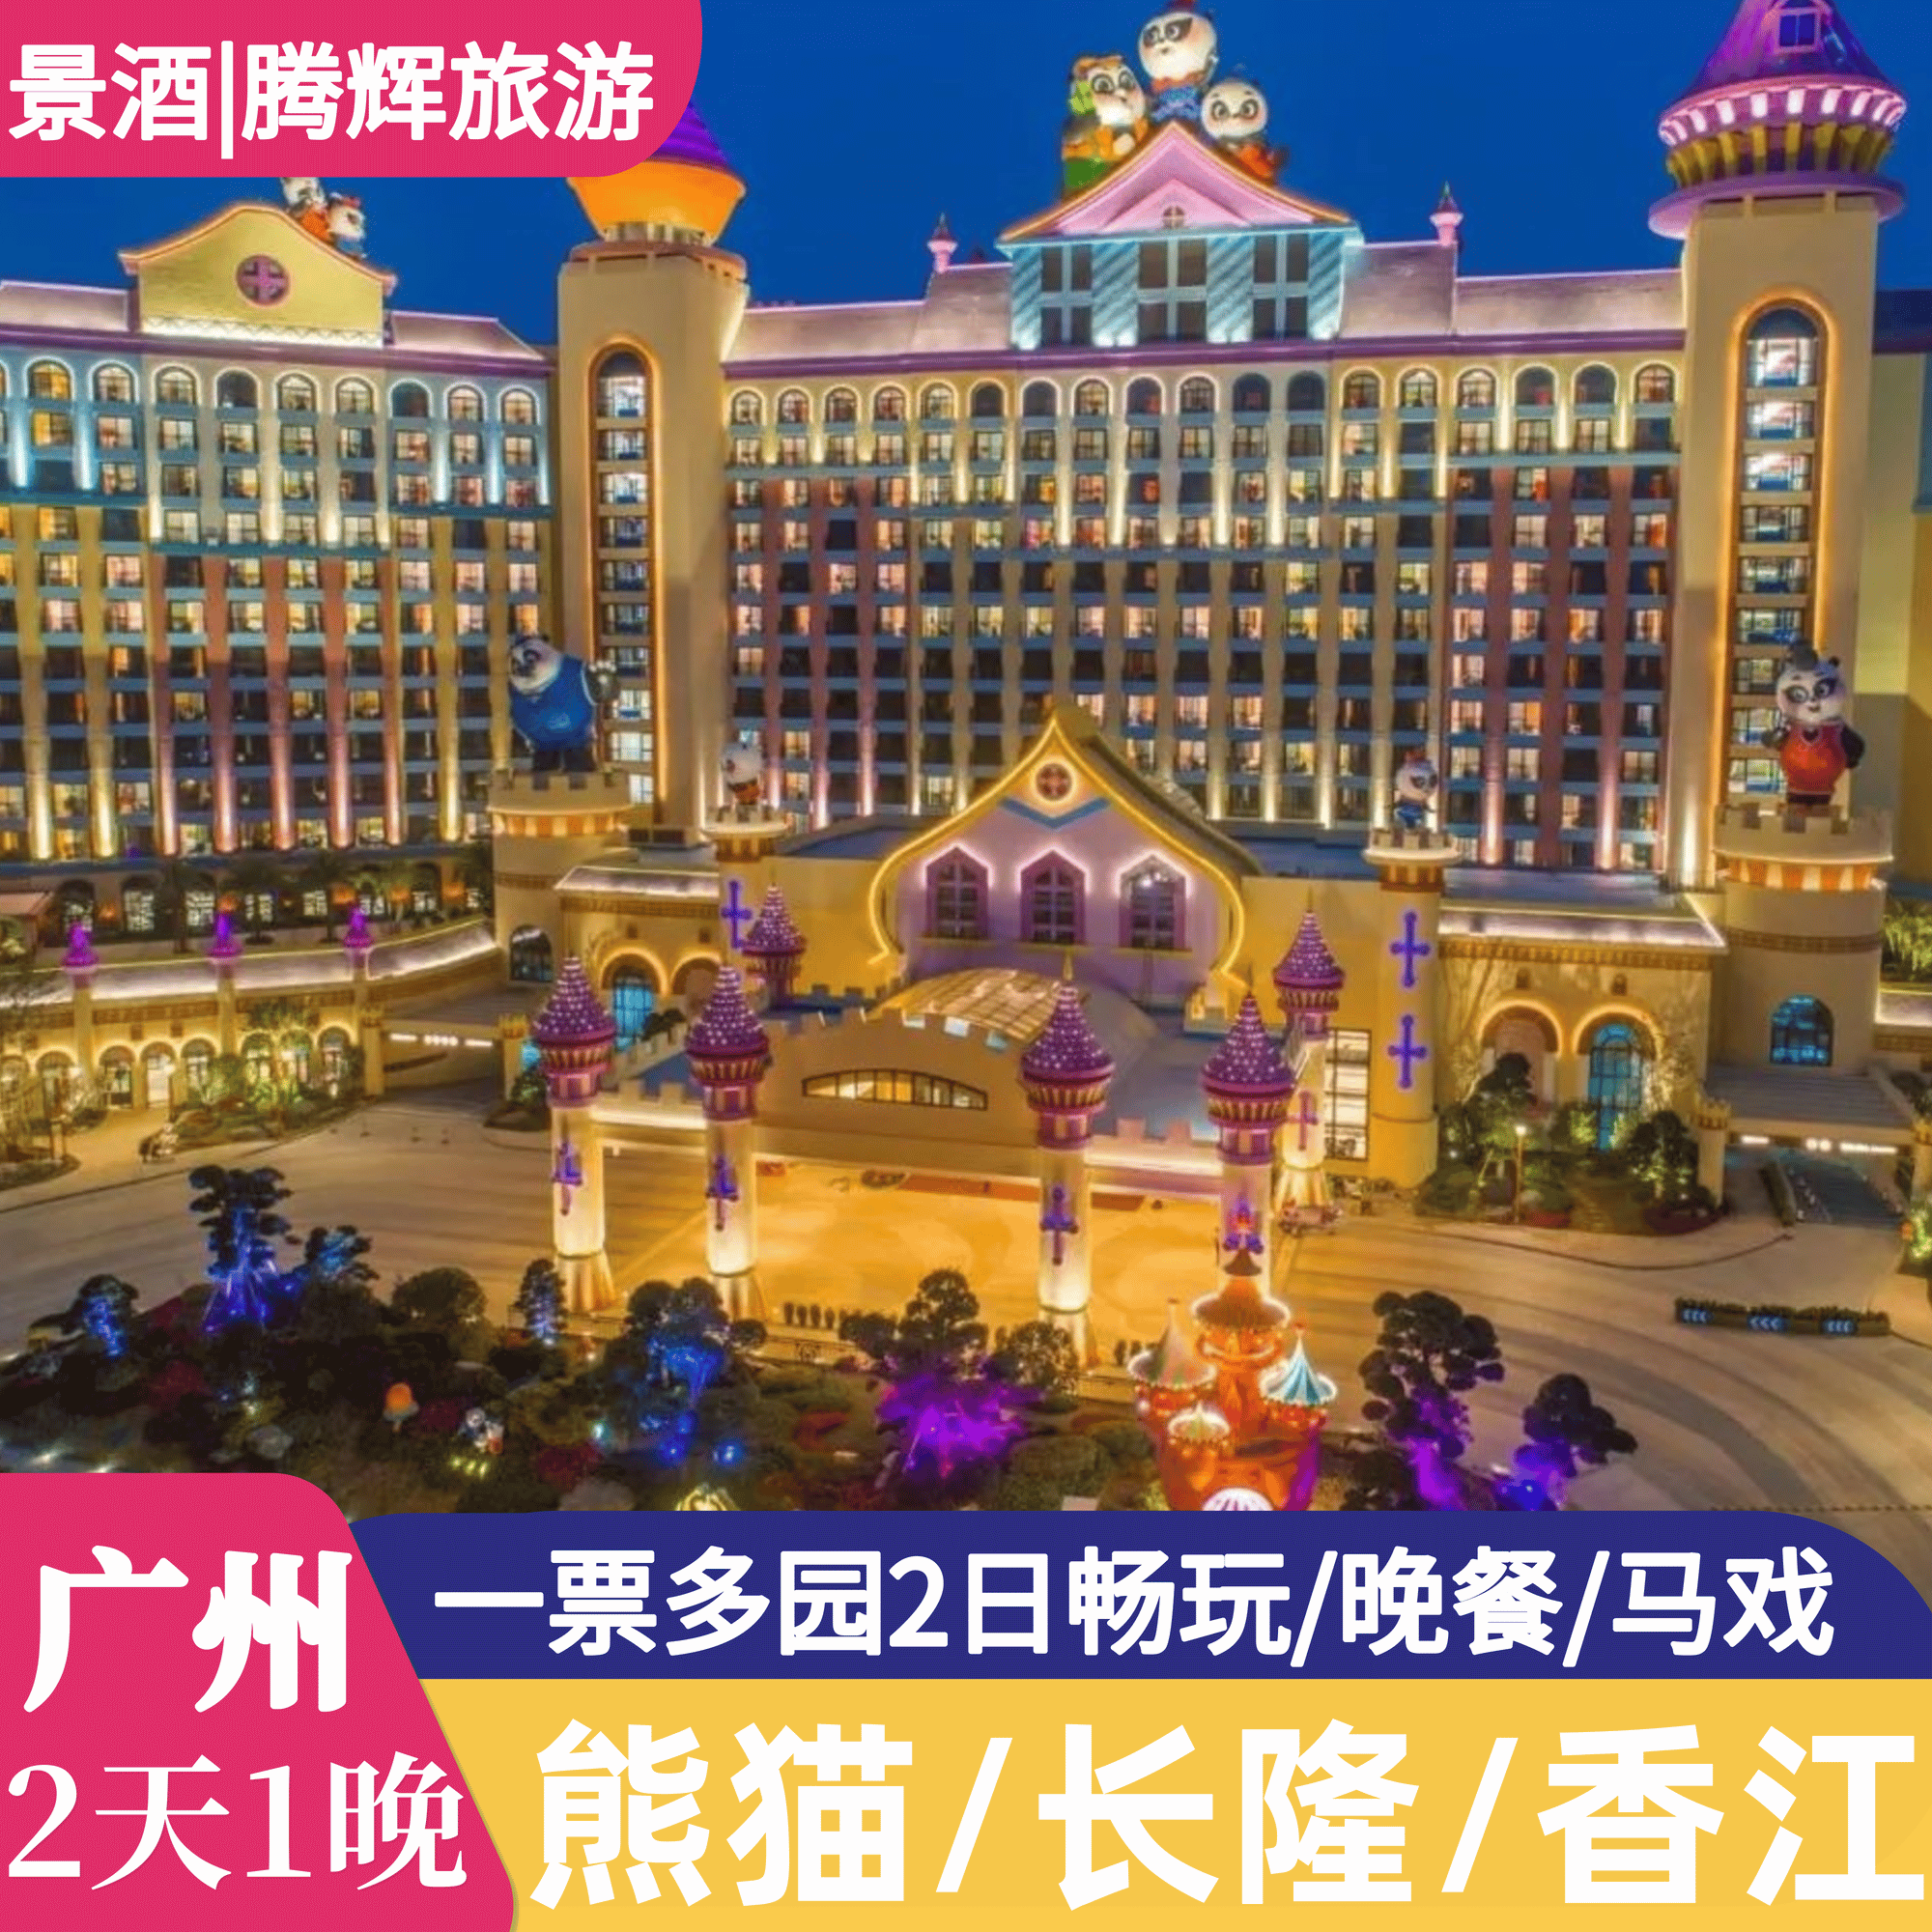 2天1晚广州熊猫/长隆/香江酒店野生动物园门票水上乐园票家庭套票